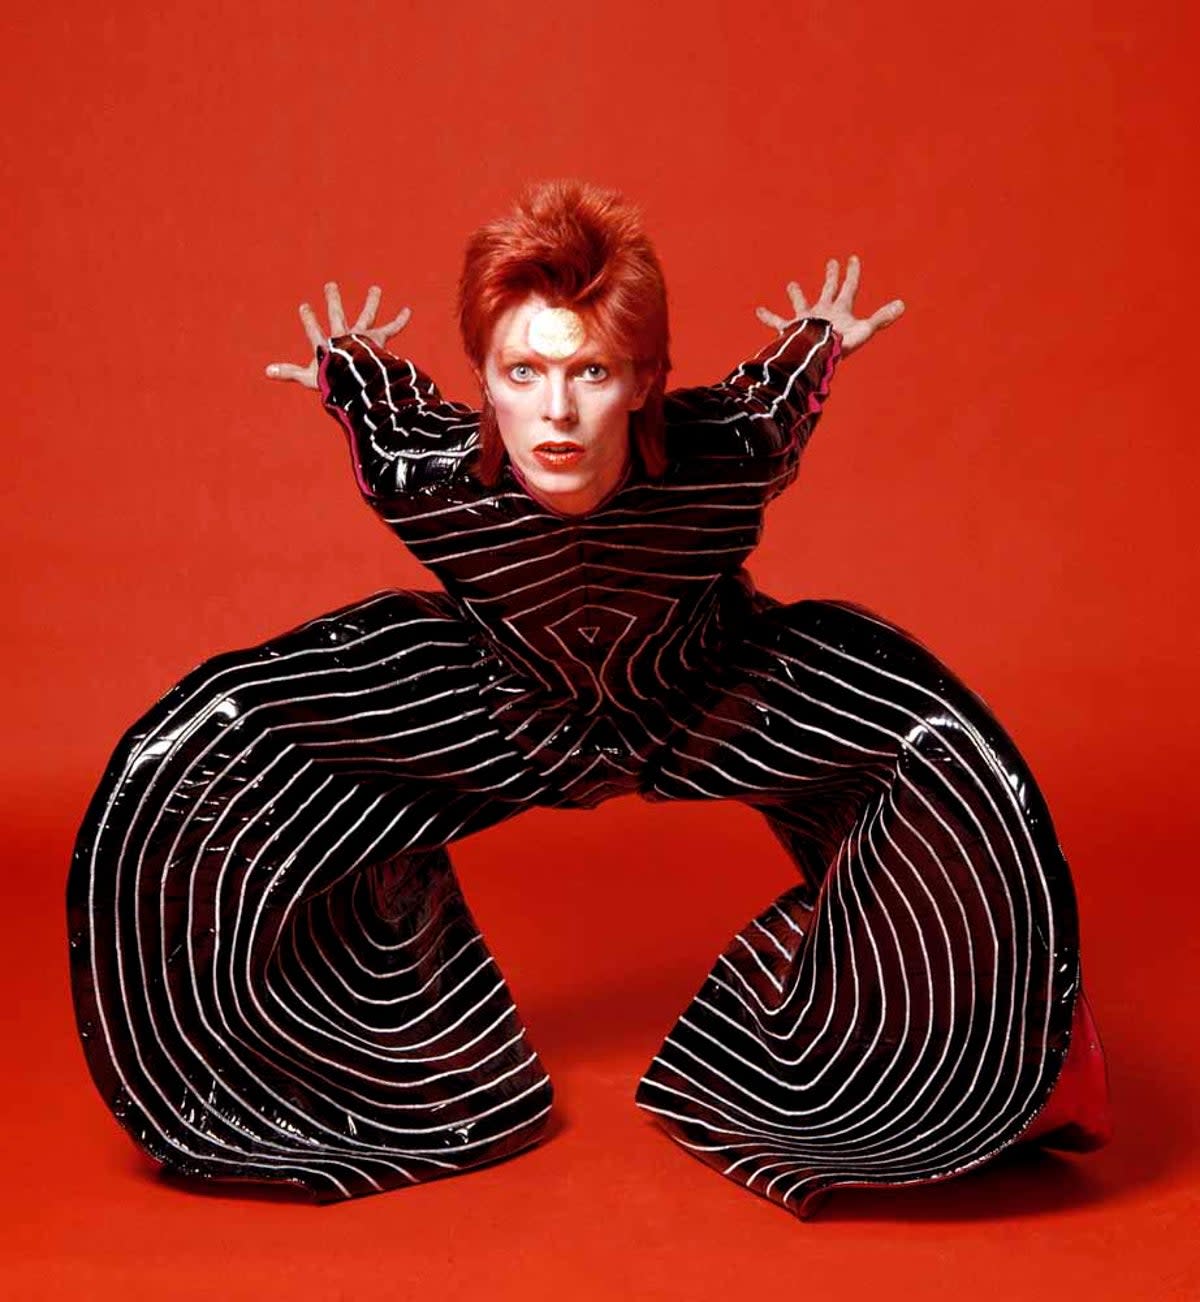 David Bowie as Ziggy Stardust (Sukita/David Bowie Archive)